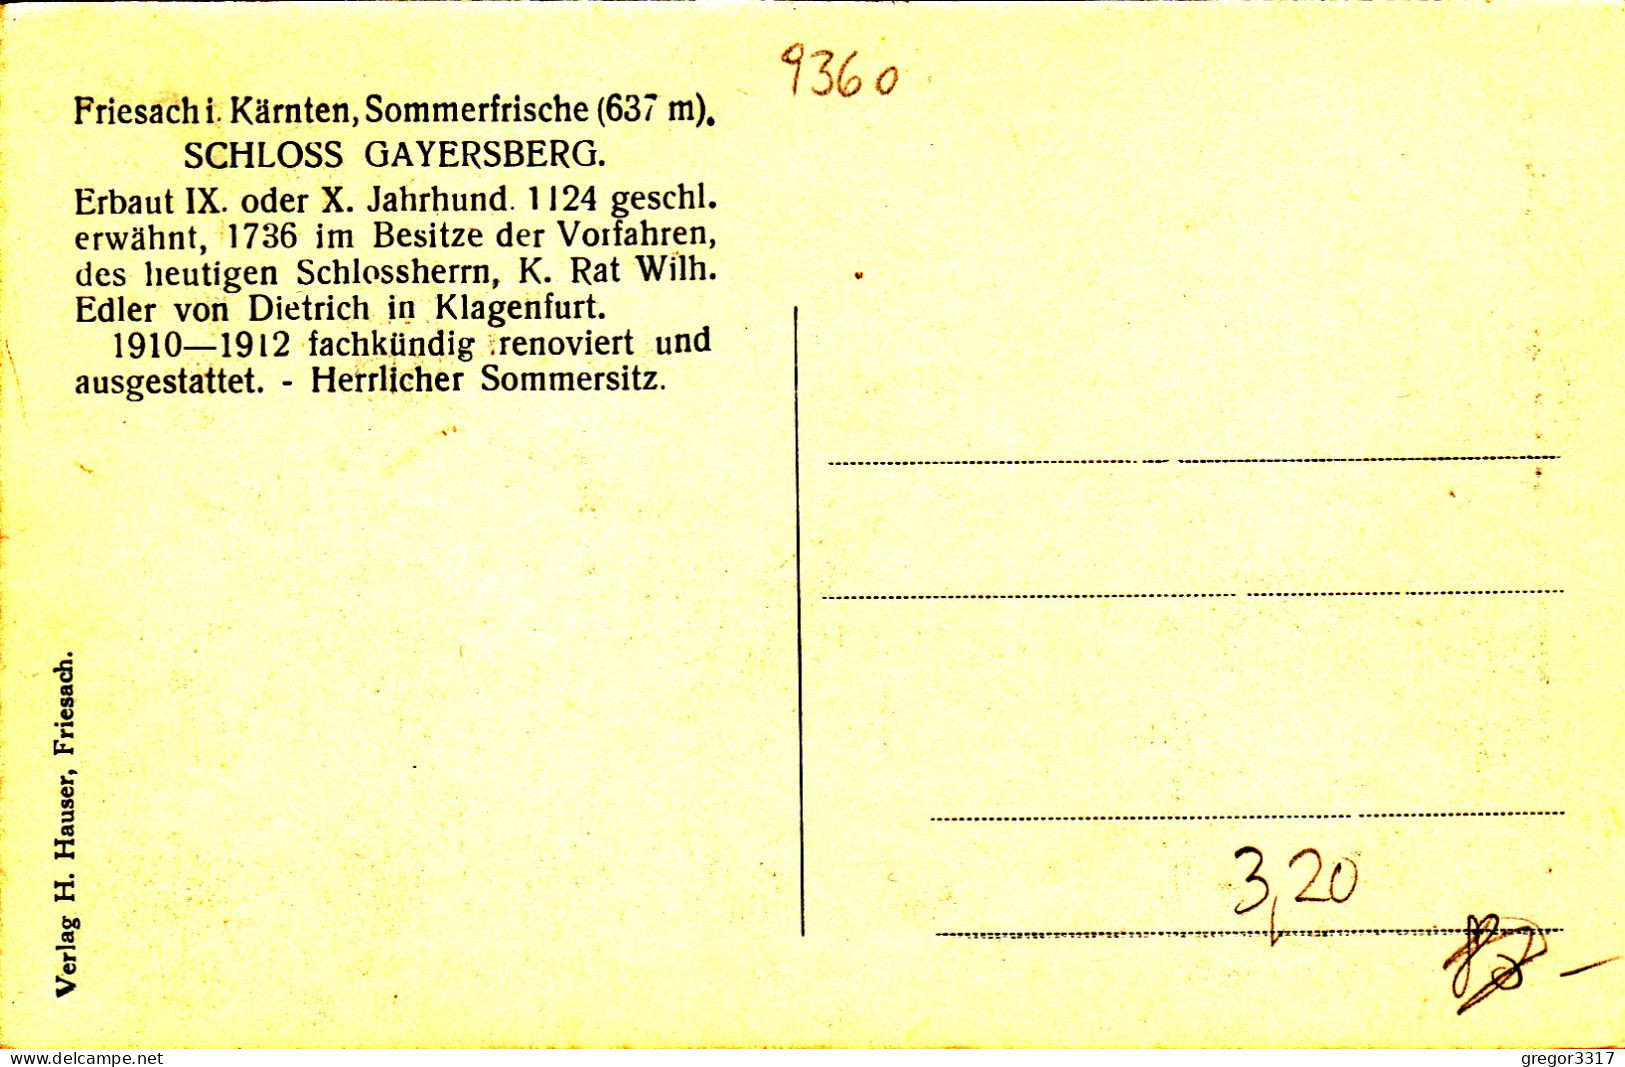 E4341) FRIESACH I. Kärnten - Sommerfrische 637m - SCHLOSS GAYERSBERG - Alt !! VErlag H. Hauser Friesach - Friesach